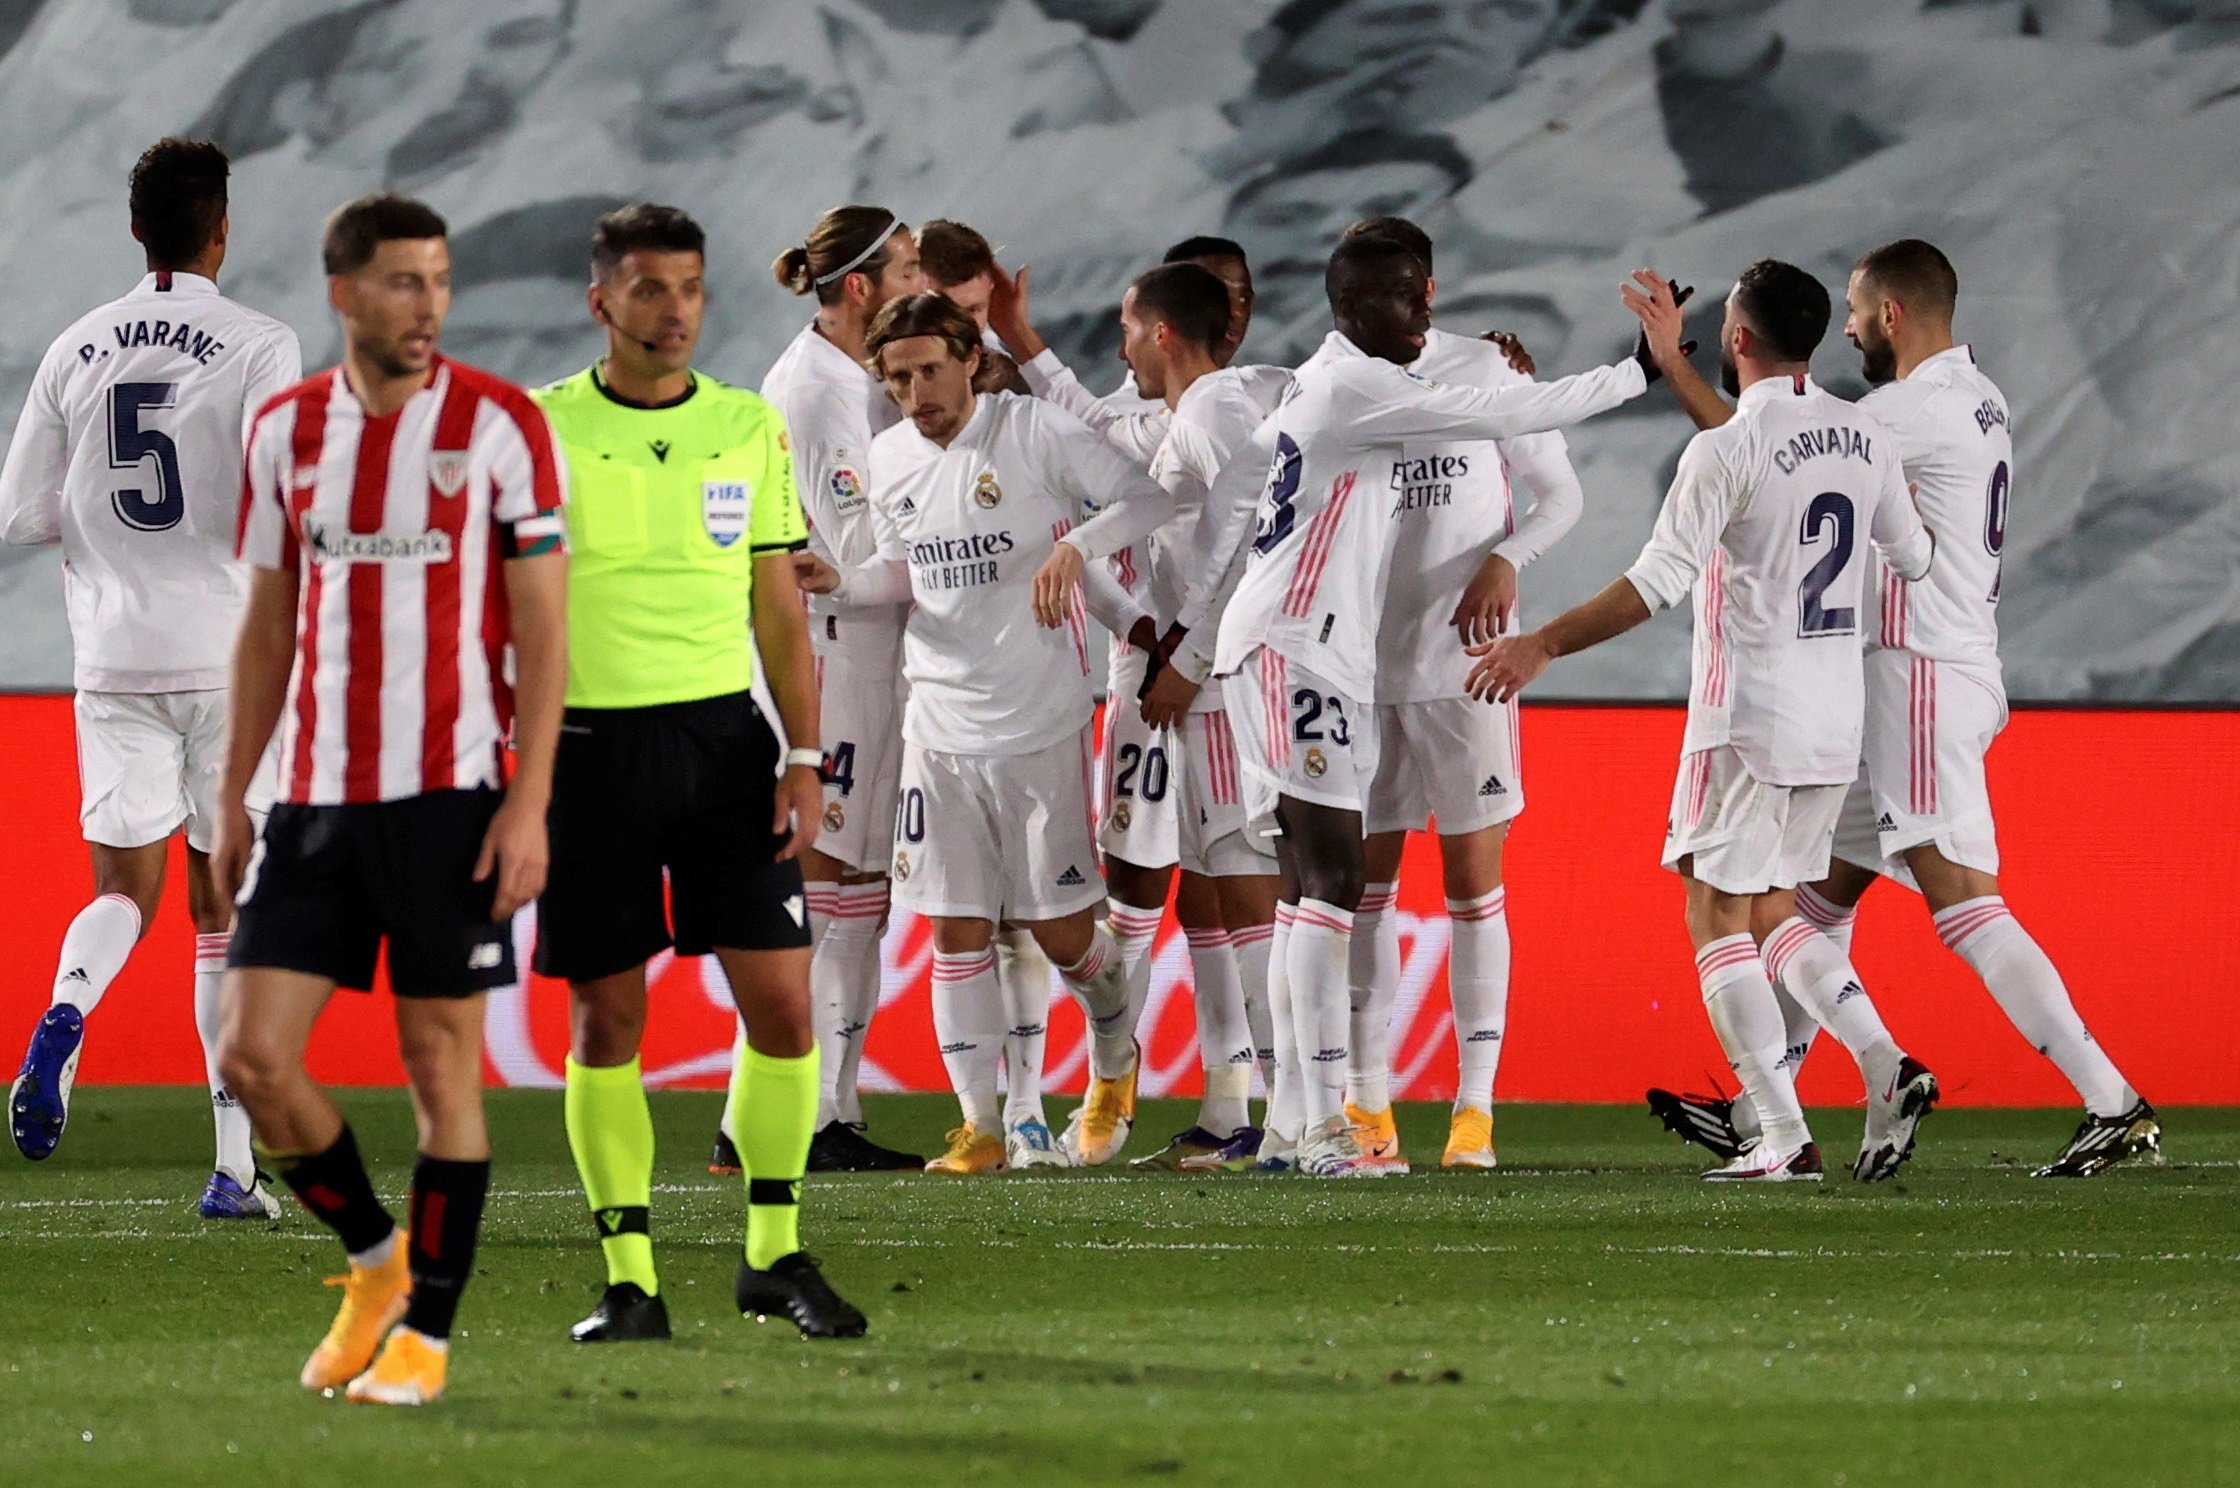 El Madrid s'aprofita de l'expulsió davant un digne Athletic (3-1)